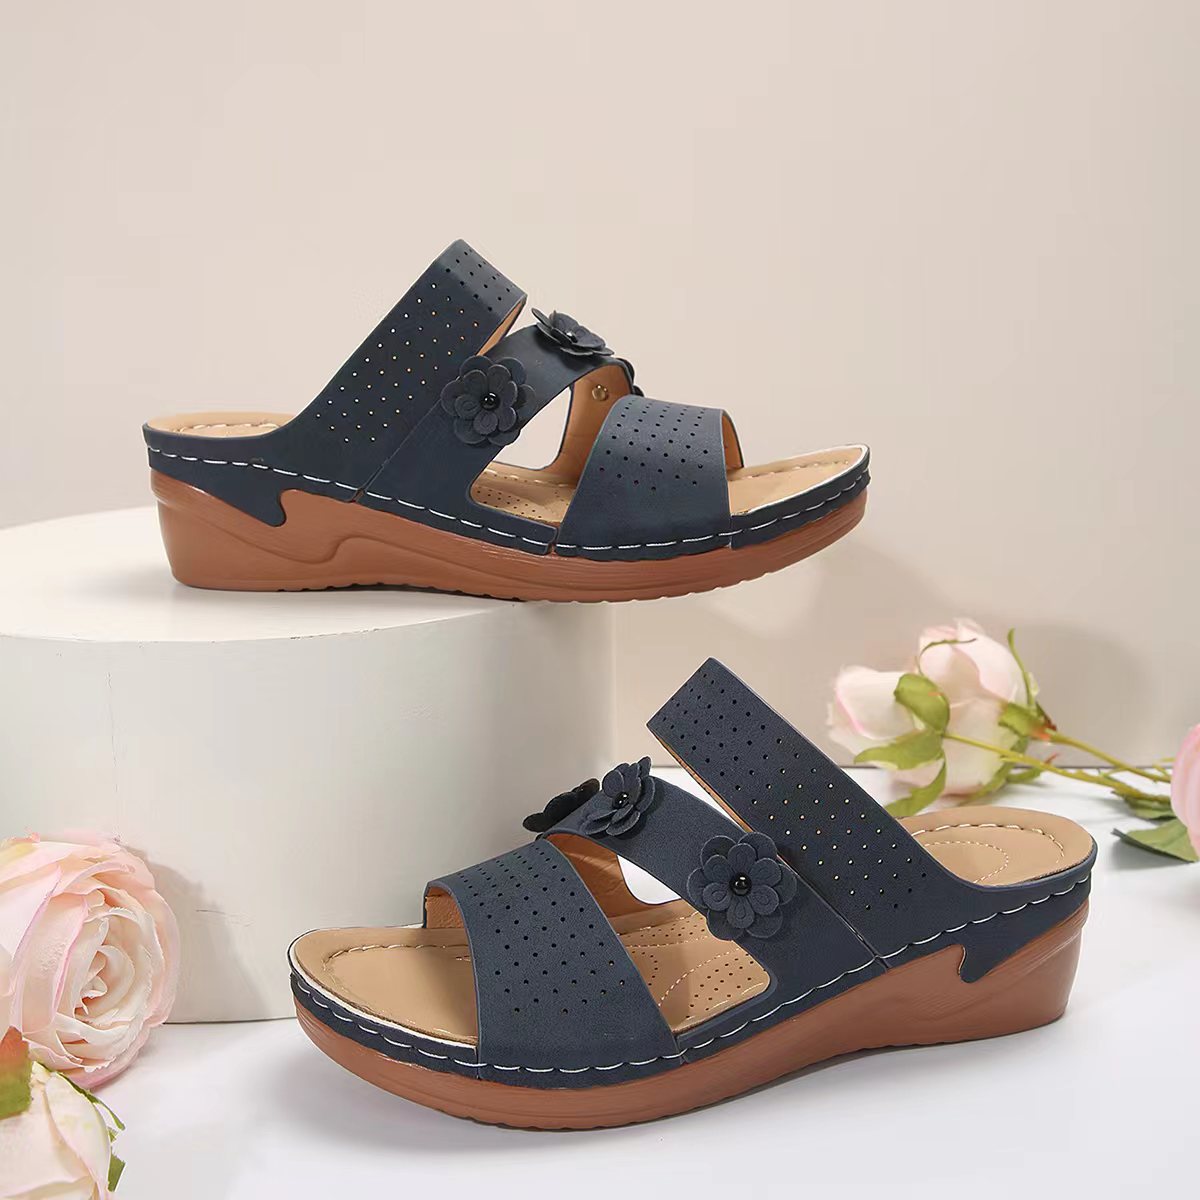 Flower PU Leather Wedge Sandals - Thandynie